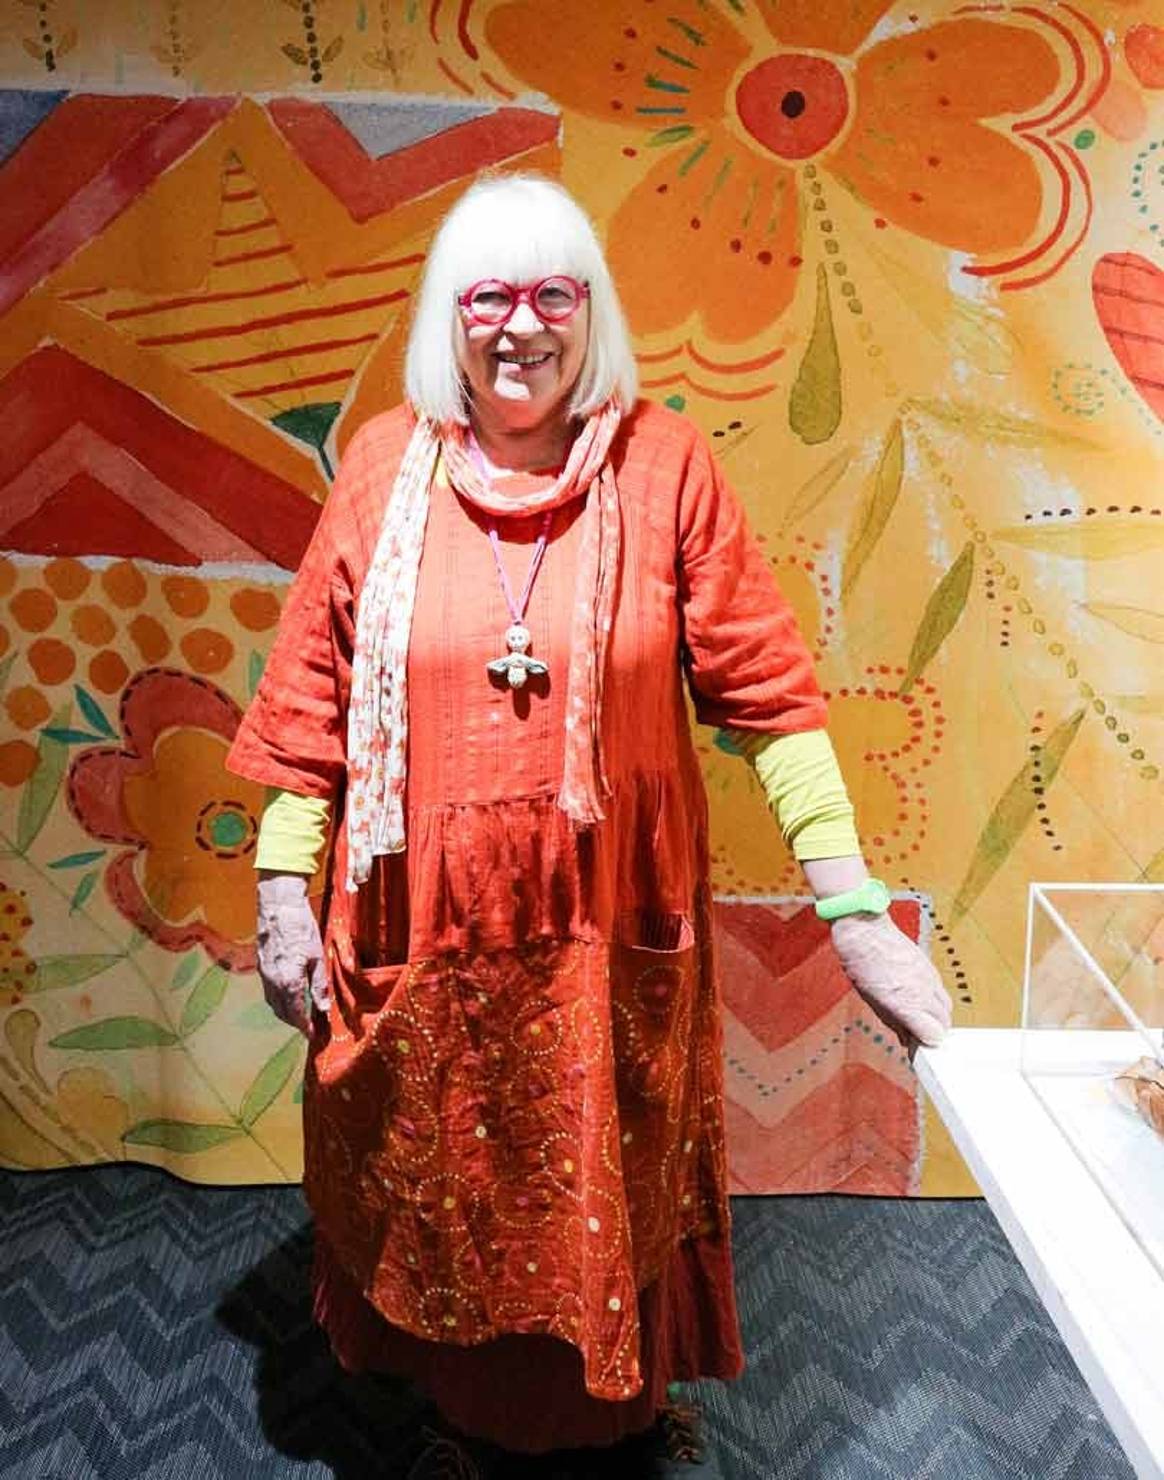 Gudrun Sjödén celebrates four decades with exhibition